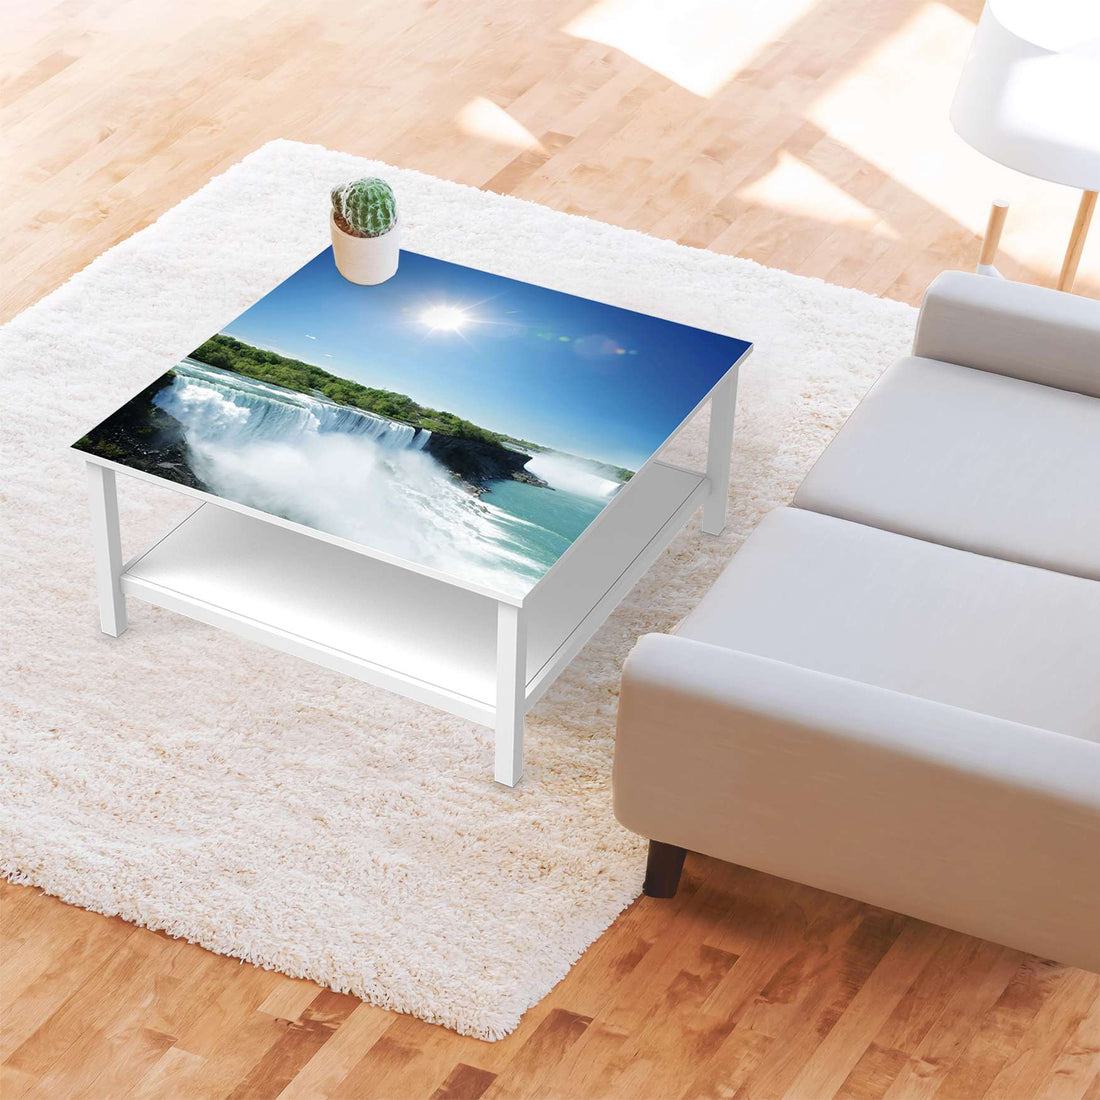 Klebefolie für Möbel Niagara Falls - IKEA Hemnes Couchtisch 90x90 cm - Wohnzimmer